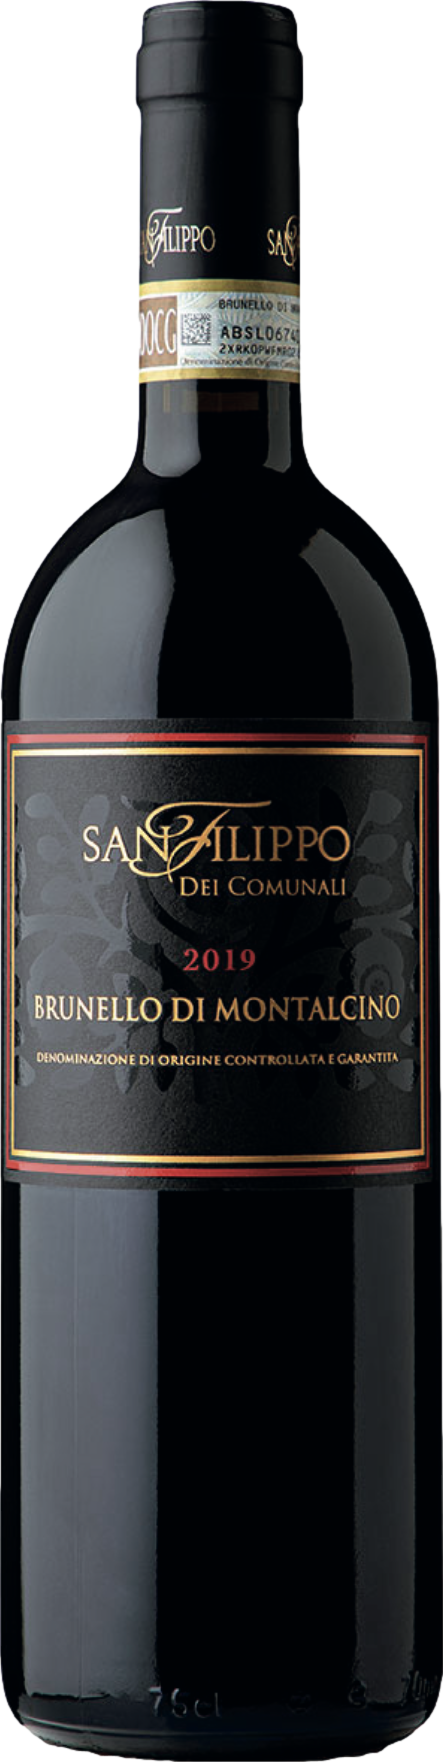 San Filippo Brunello di Montalcino 2019 San Filippo 8wines DACH